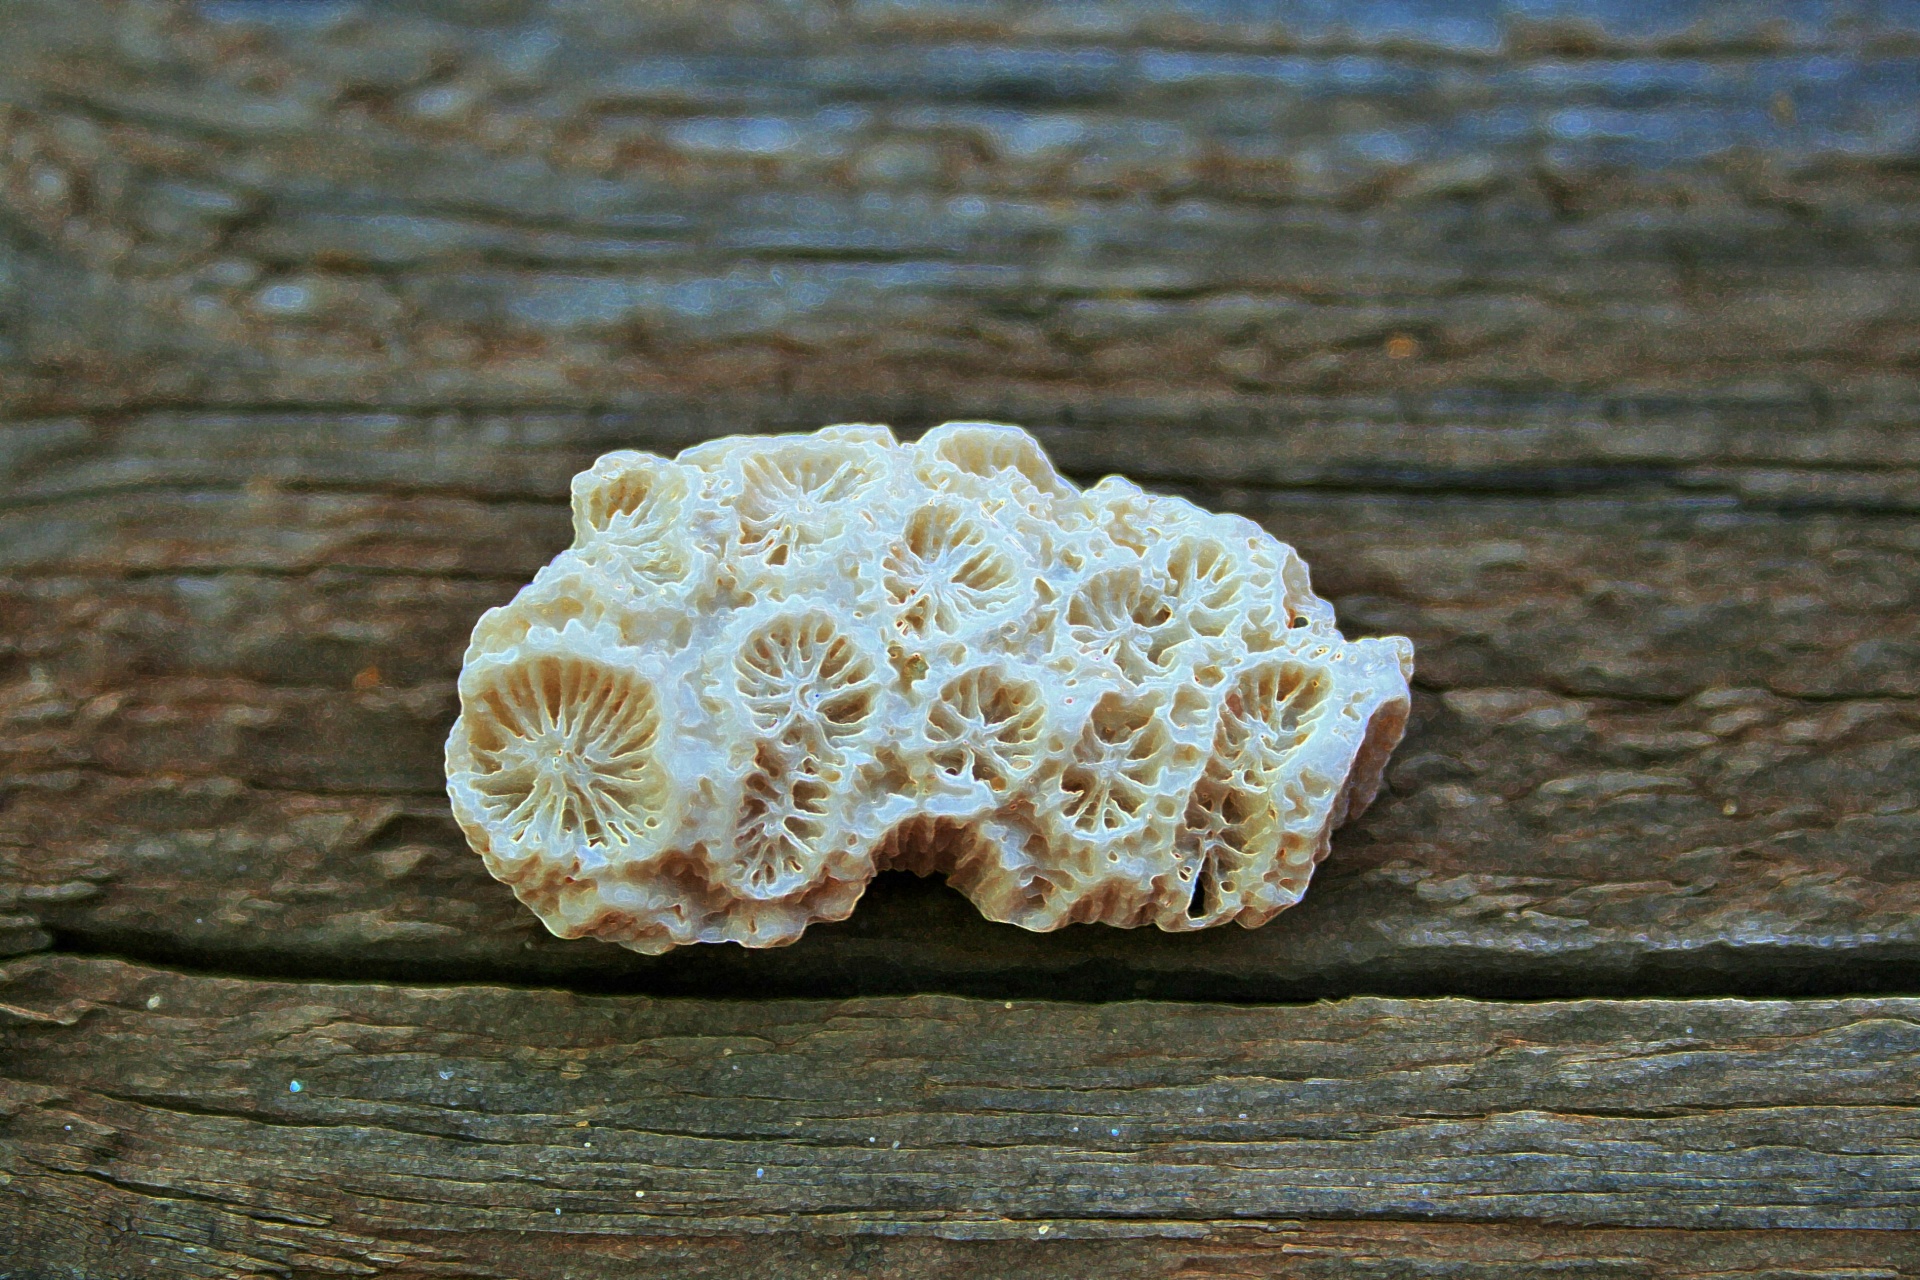 White Coral